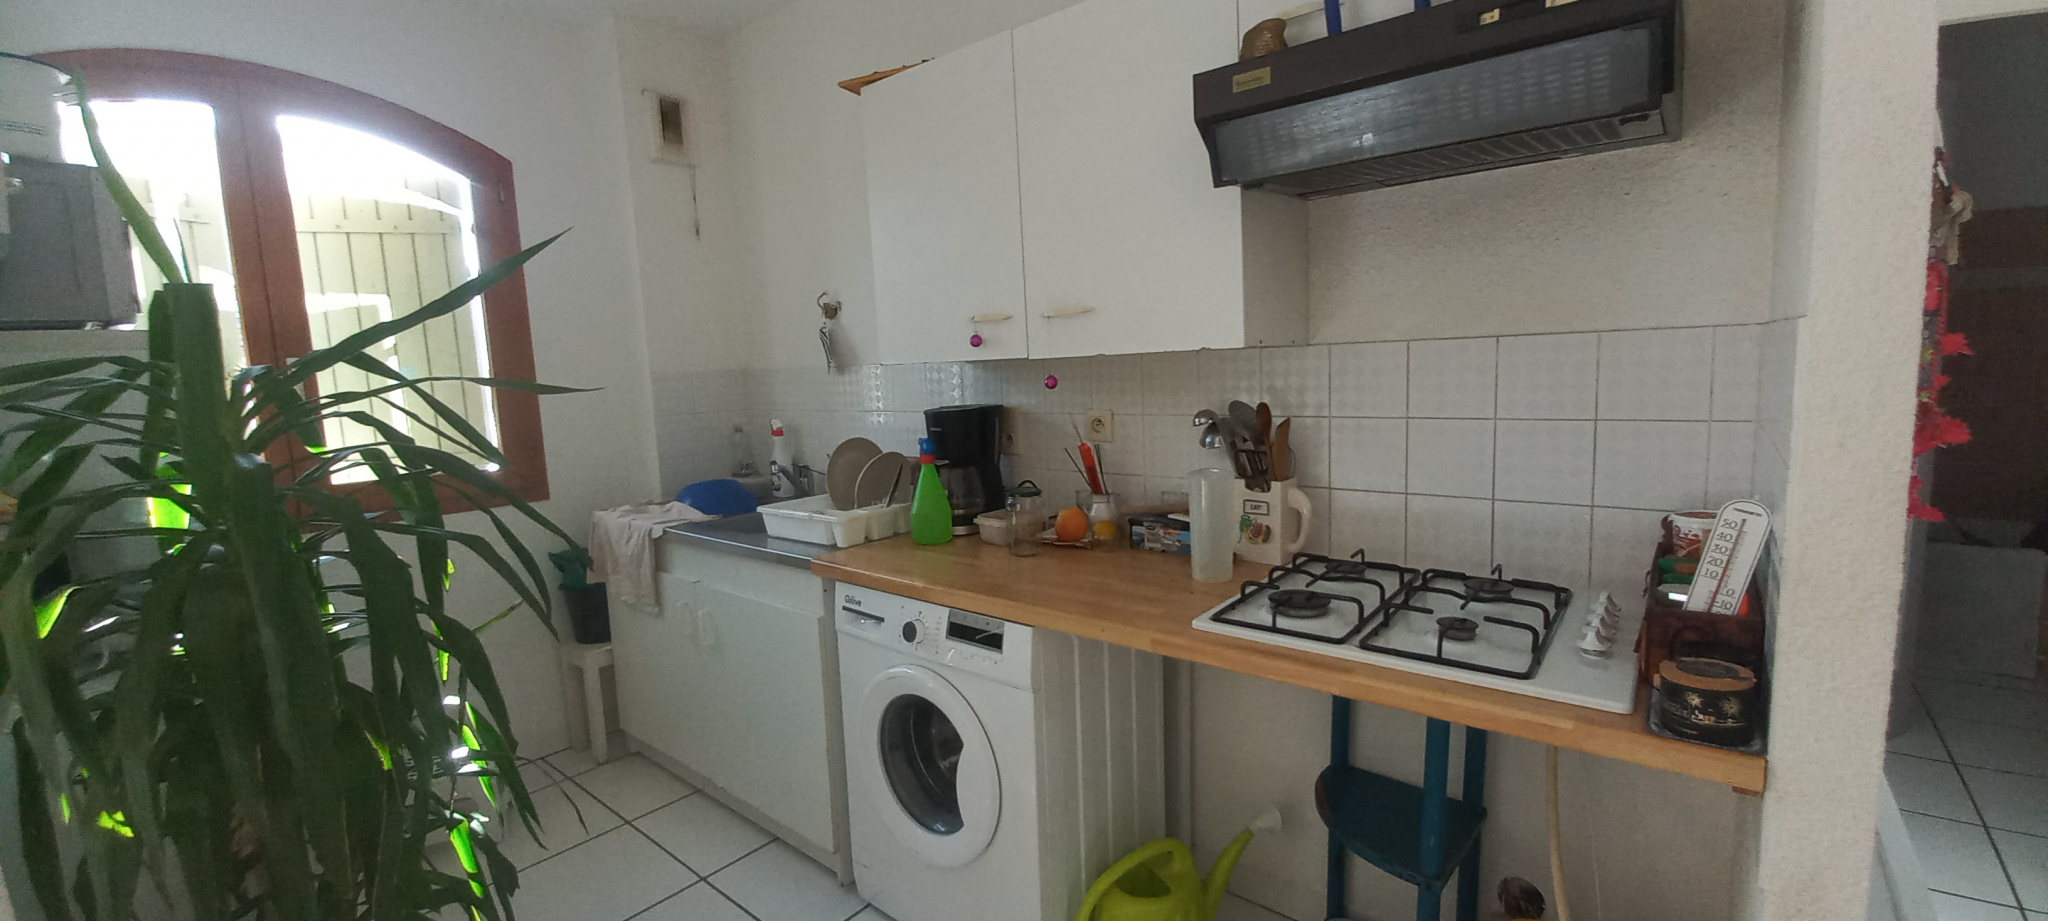 À vendre appartement de 45m2 à argelès-sur-mer (66700) - Photo 2'